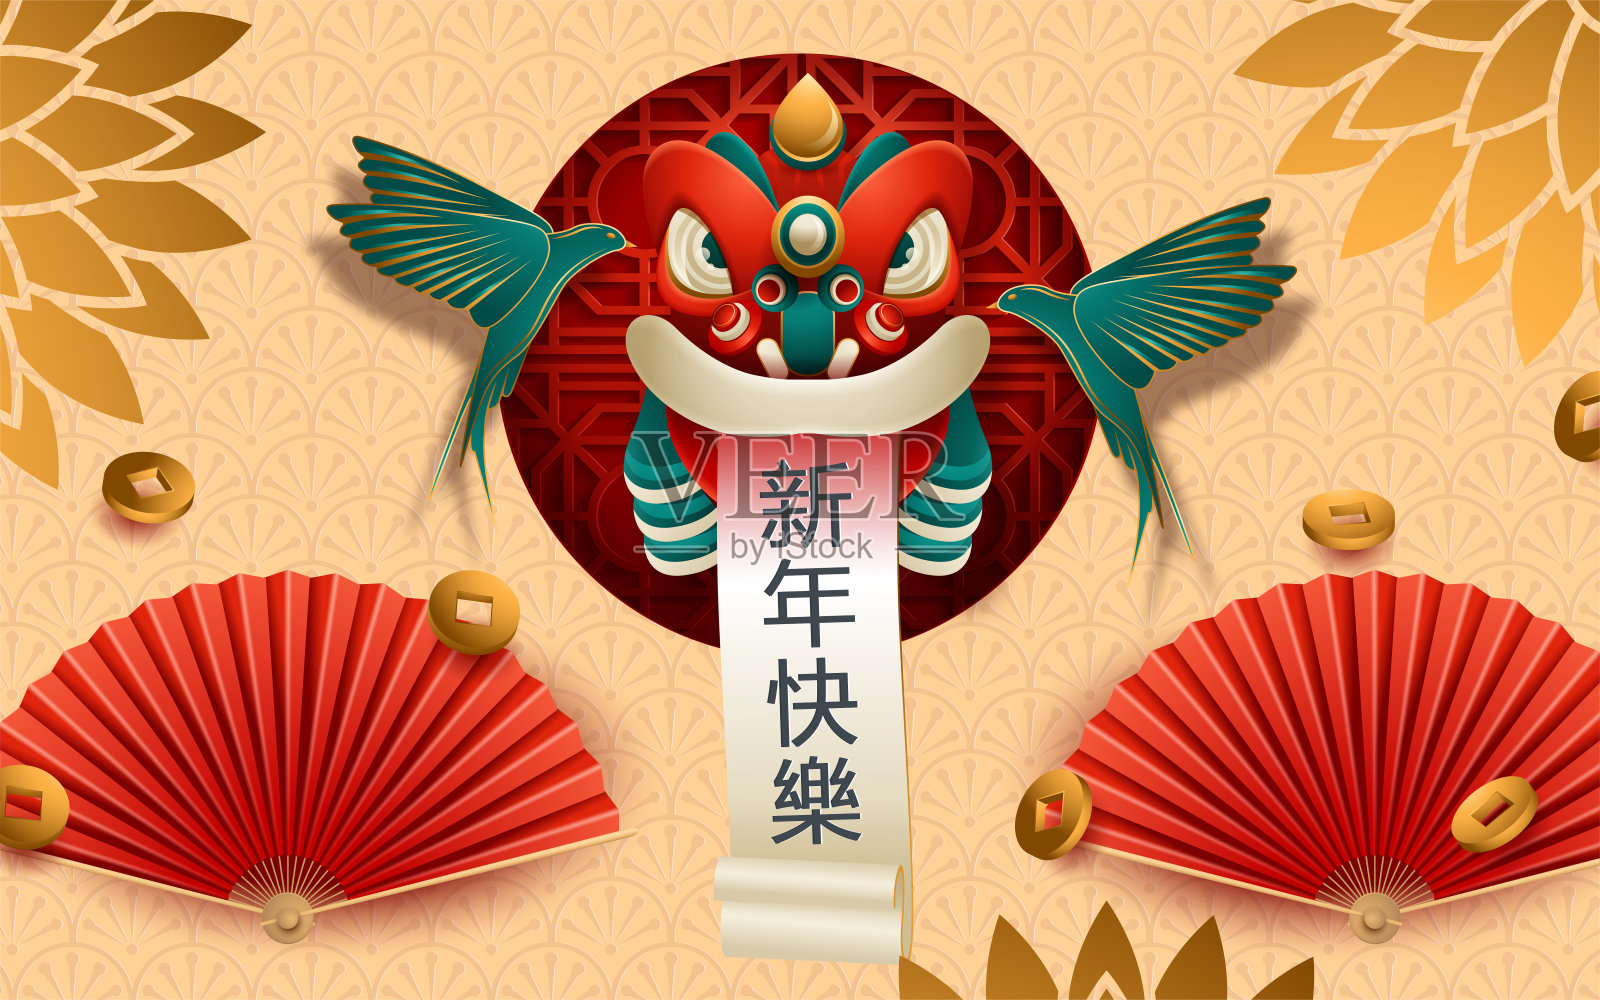 中国新年狮子头卷轴。翻译:新年快乐。矢量图插画图片素材